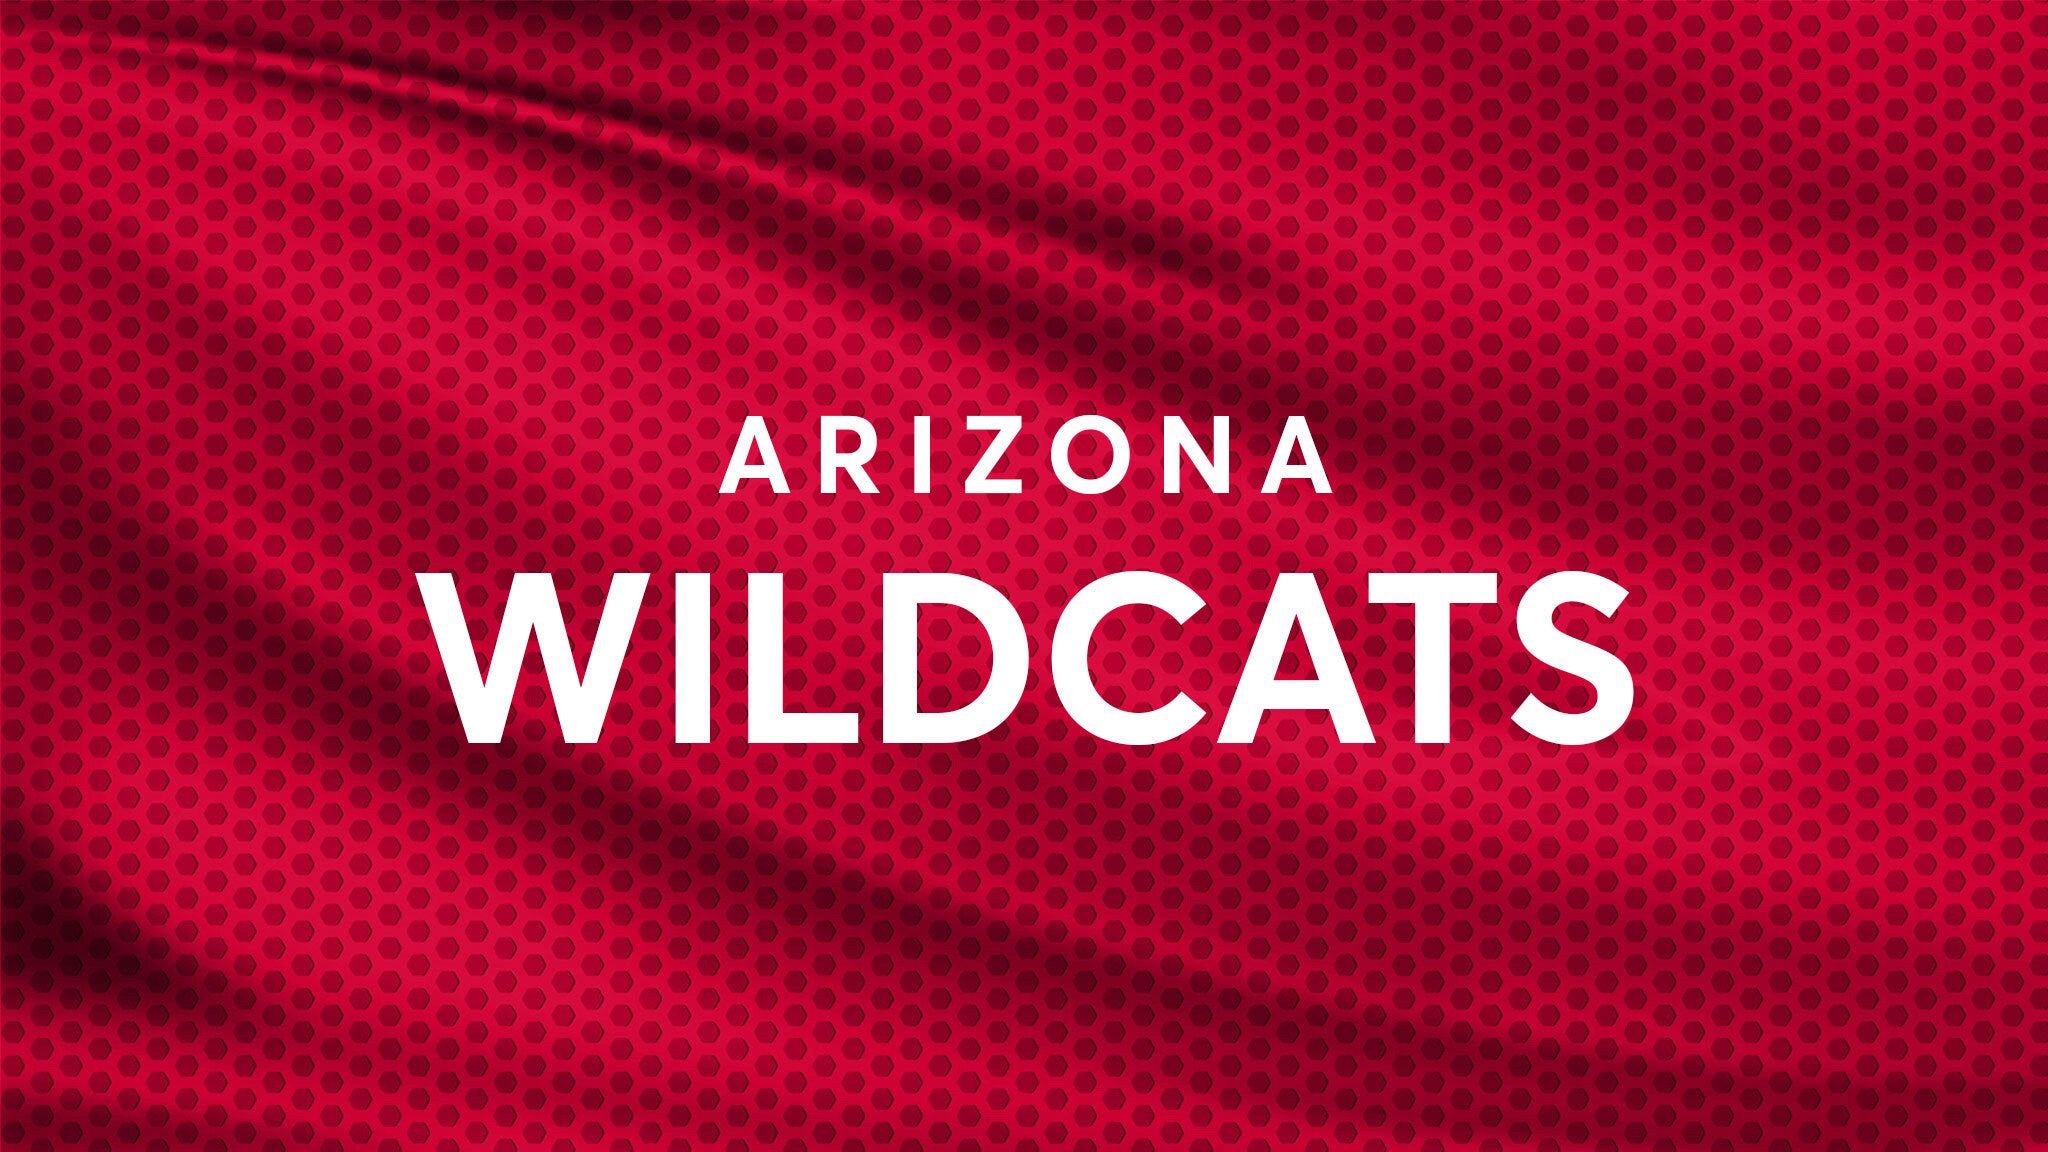 Arizona Wildcats Football vs. New Mexico Lobos Football hero